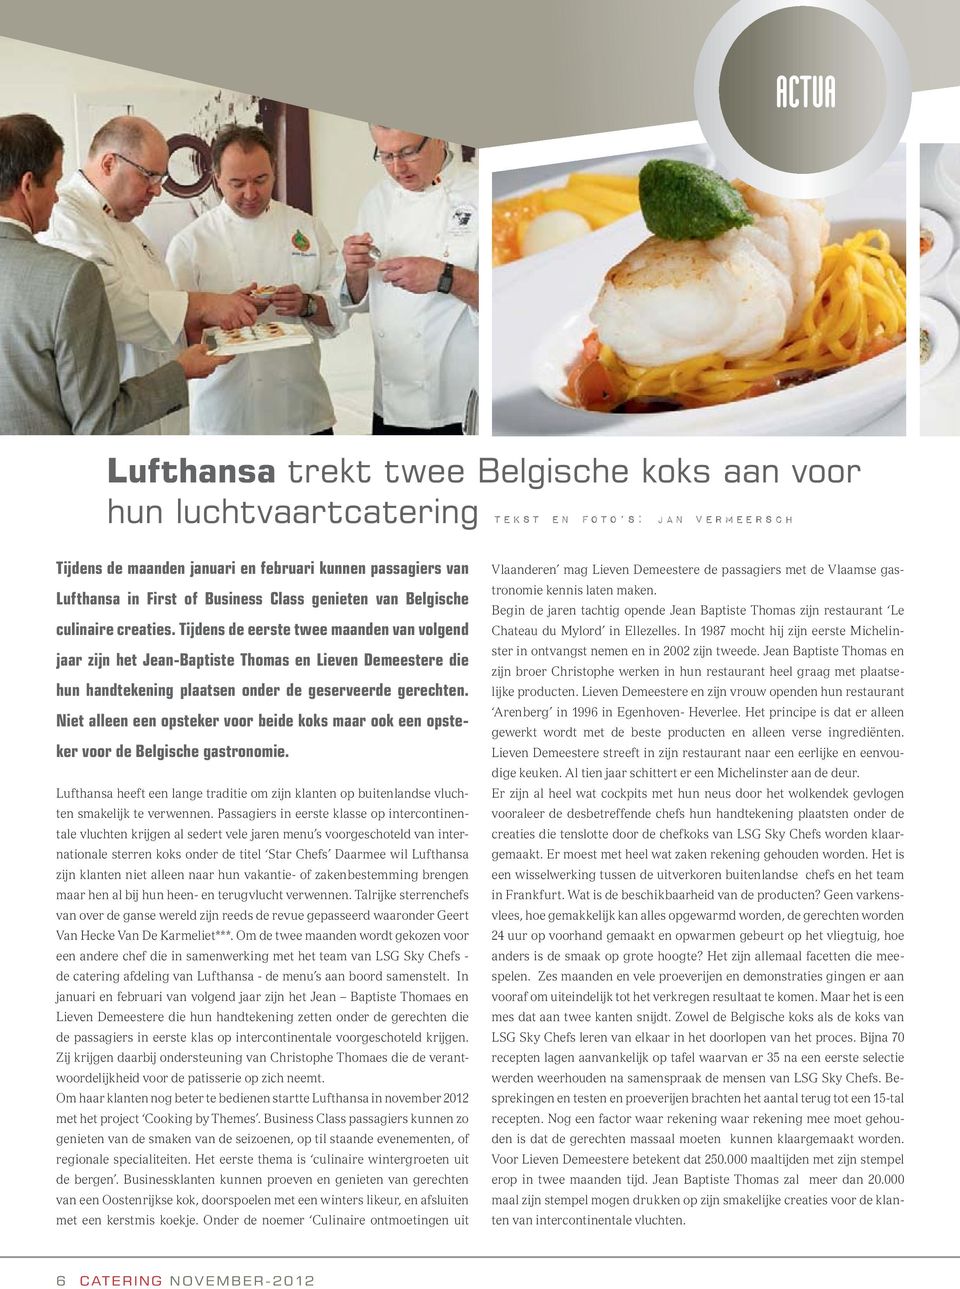 Tijdens de eerste twee maanden van volgend jaar zijn het Jean-Baptiste Thomas en Lieven Demeestere die hun handtekening plaatsen onder de geserveerde gerechten.